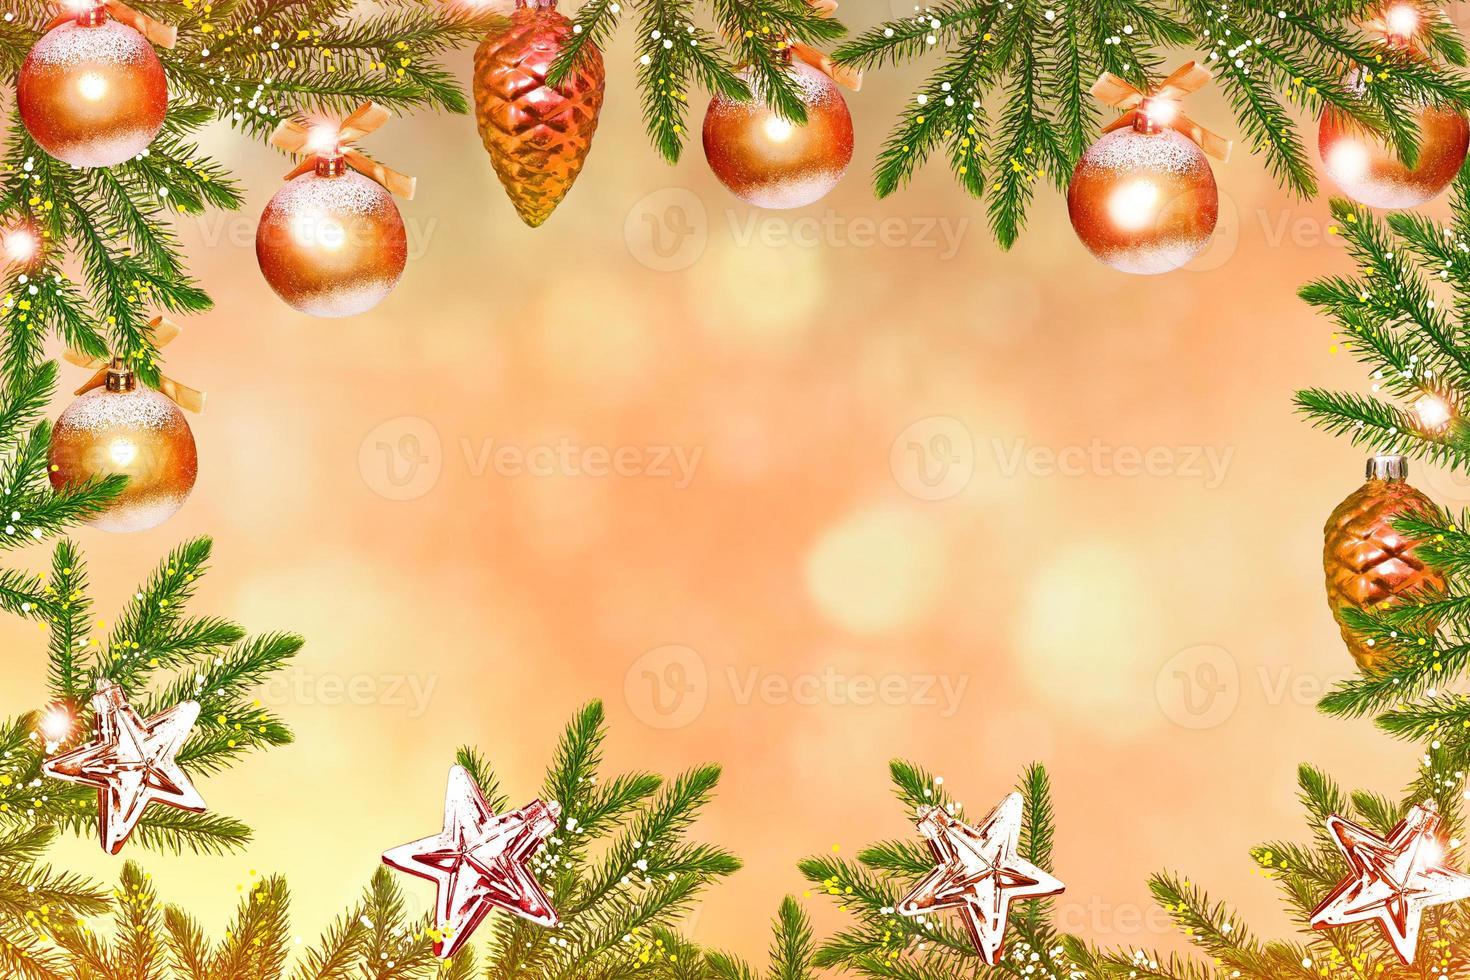 weihnachtsbaum mit hellen spielzeugen geschmückt. Karte. foto